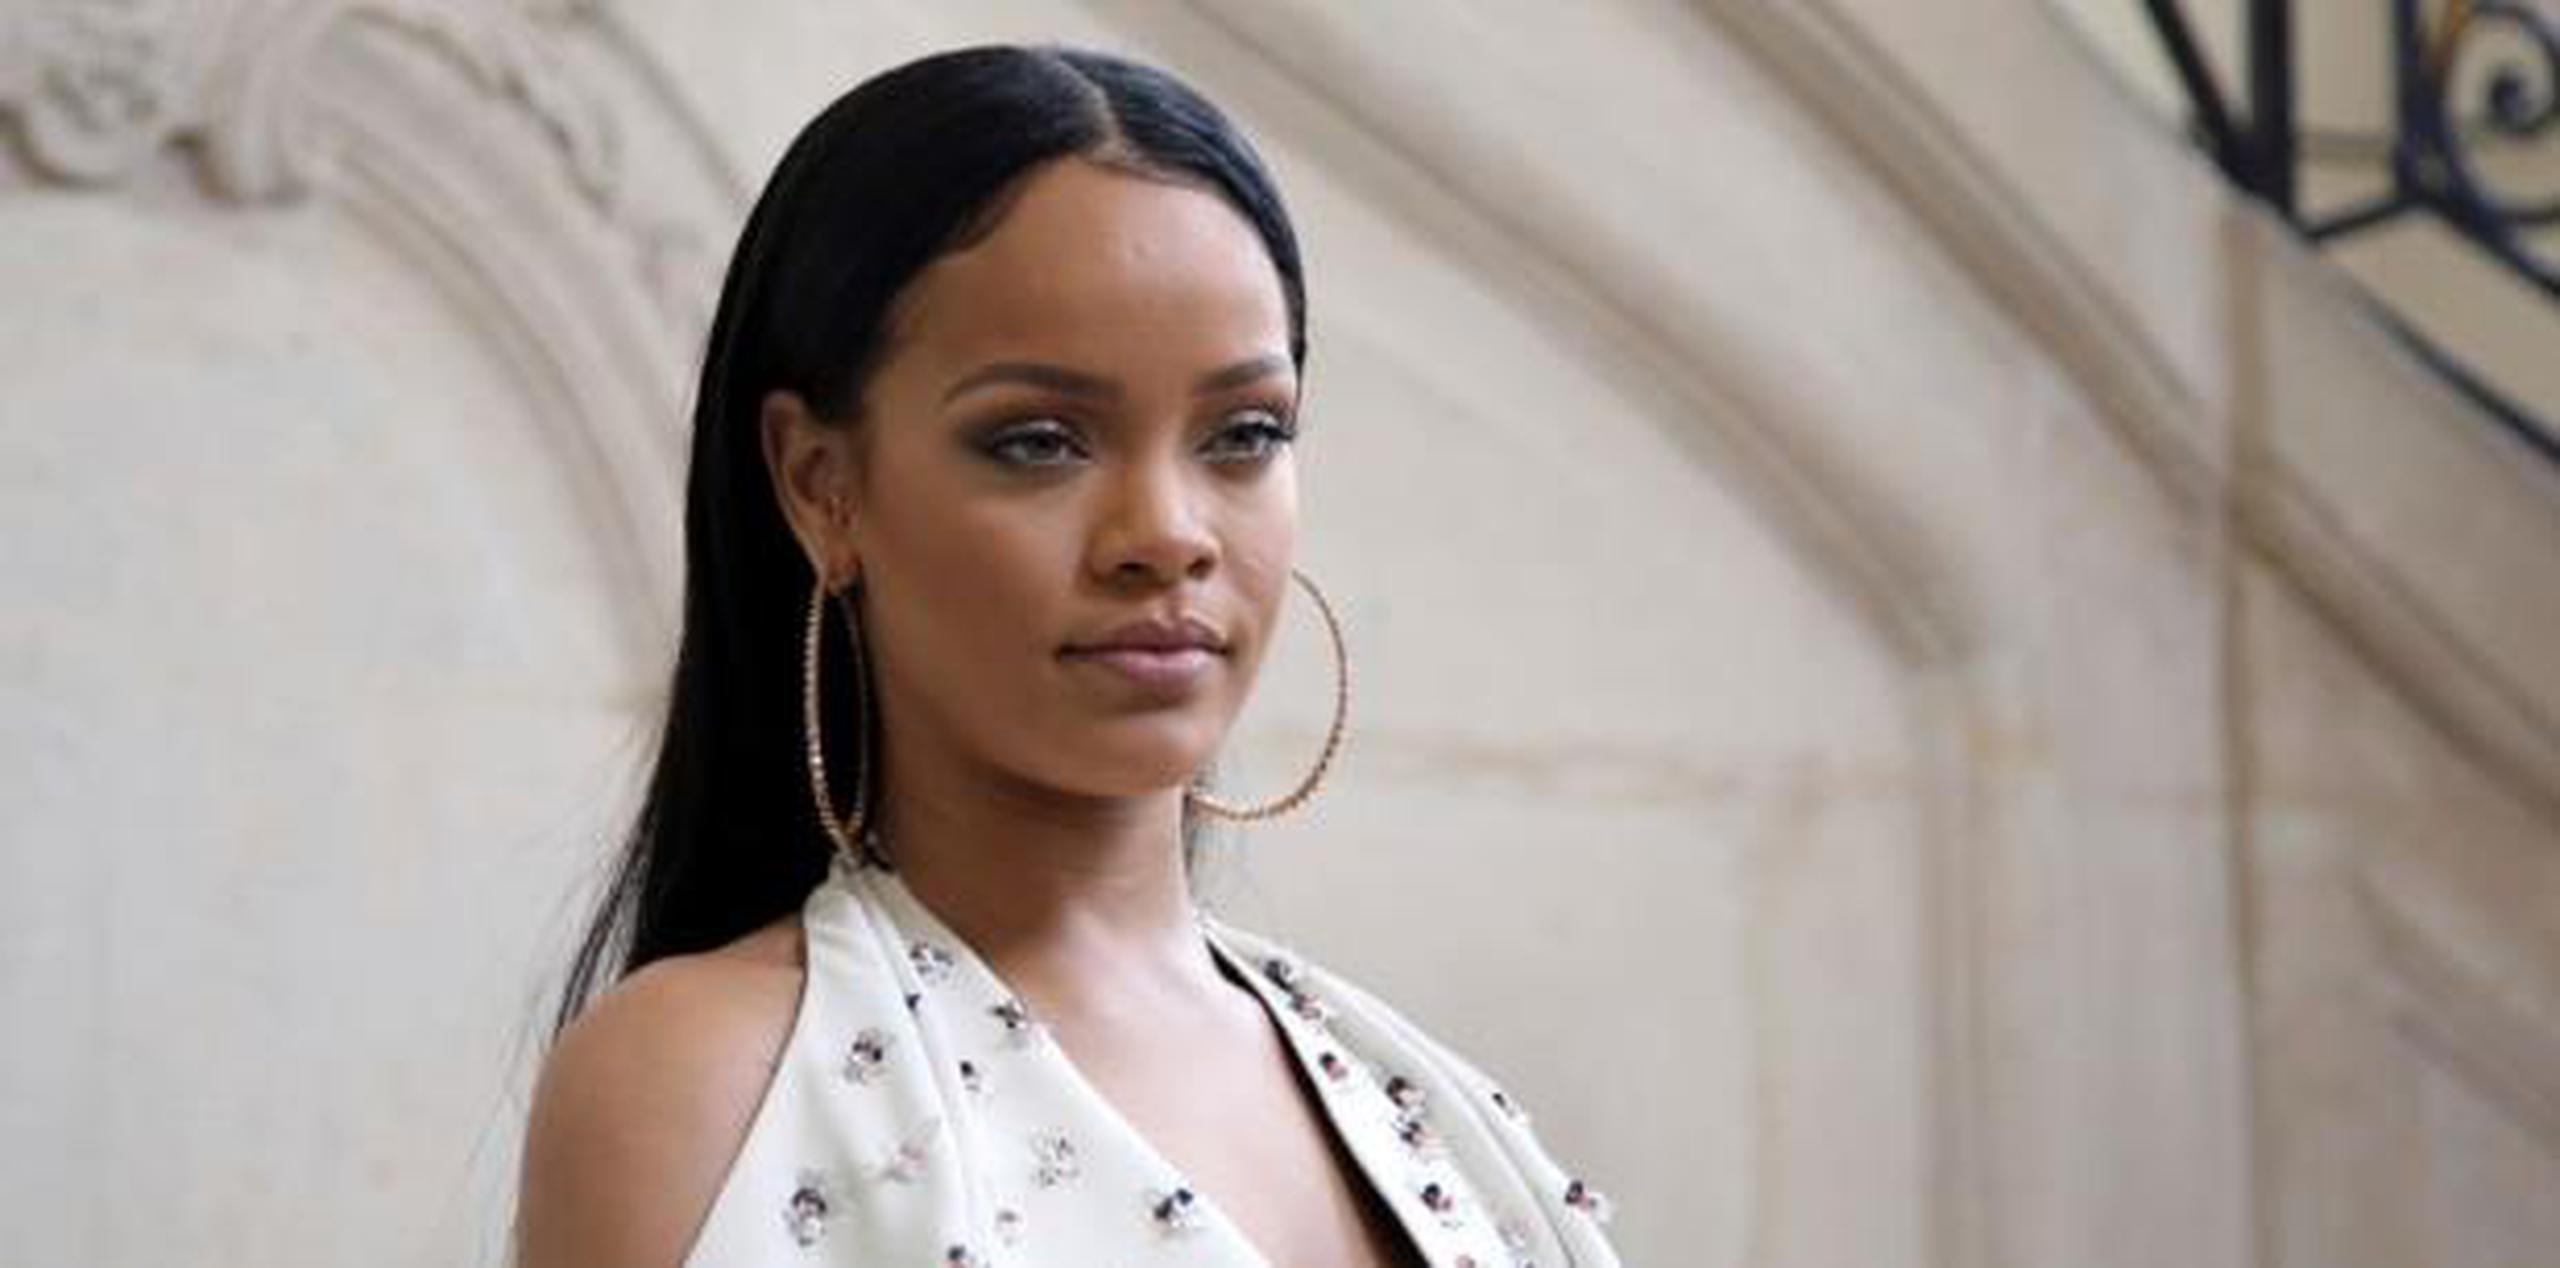 La primera vez que escalaron la casa de Rihanna fue en mayo. (Archivo)